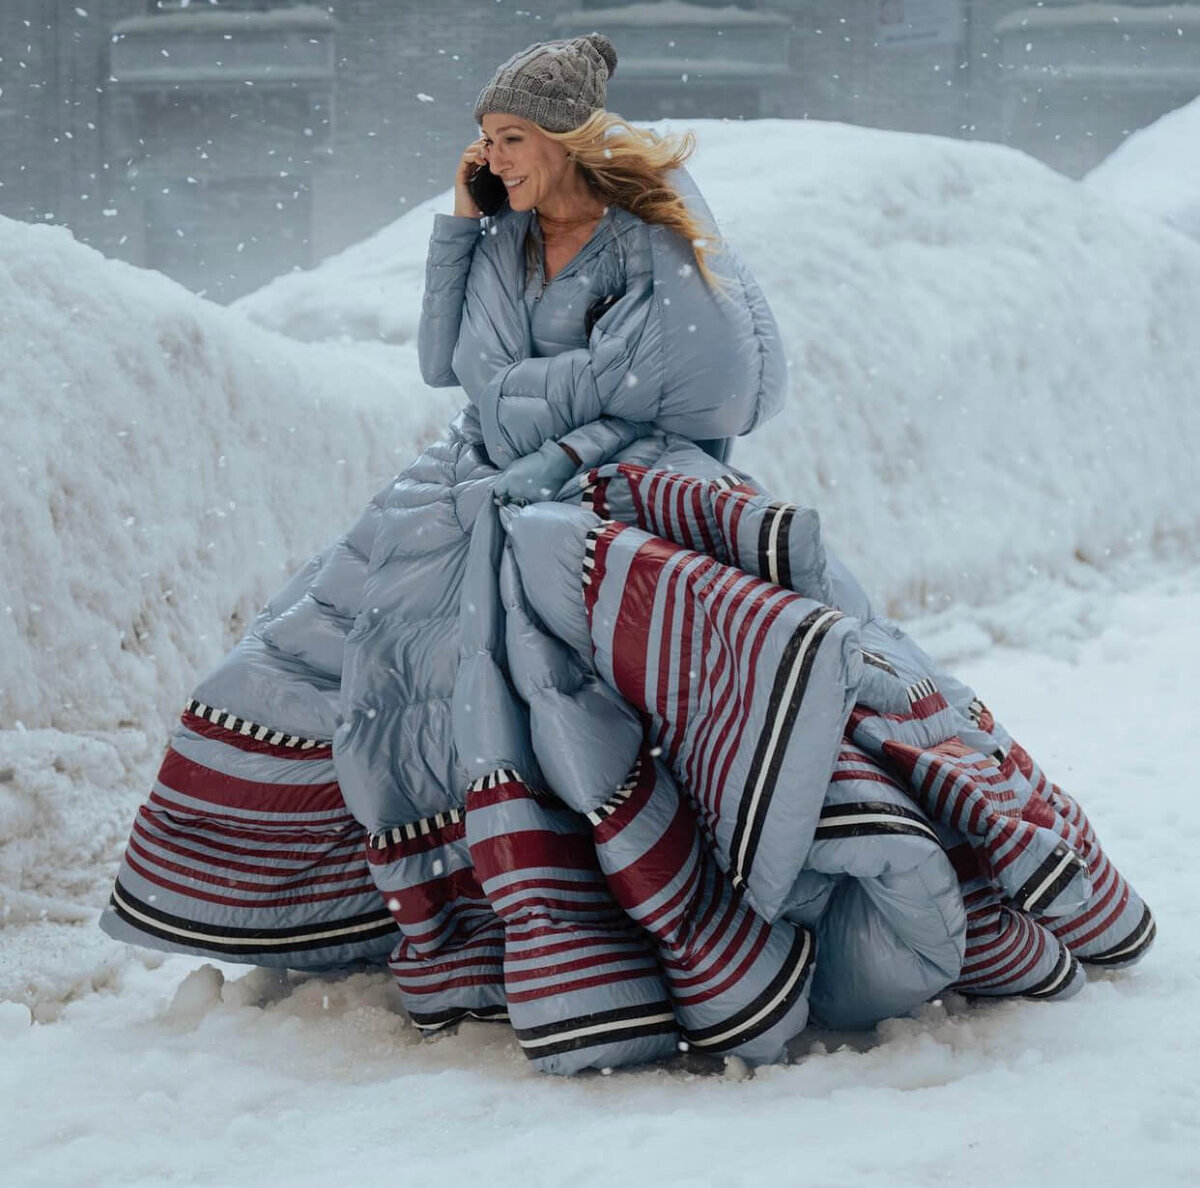 Когда на улице наступает зима с ее холодными деньками, иногда наш стиль теряется под многочисленными слоями одежды, которую мы надеваем, чтобы согреться.